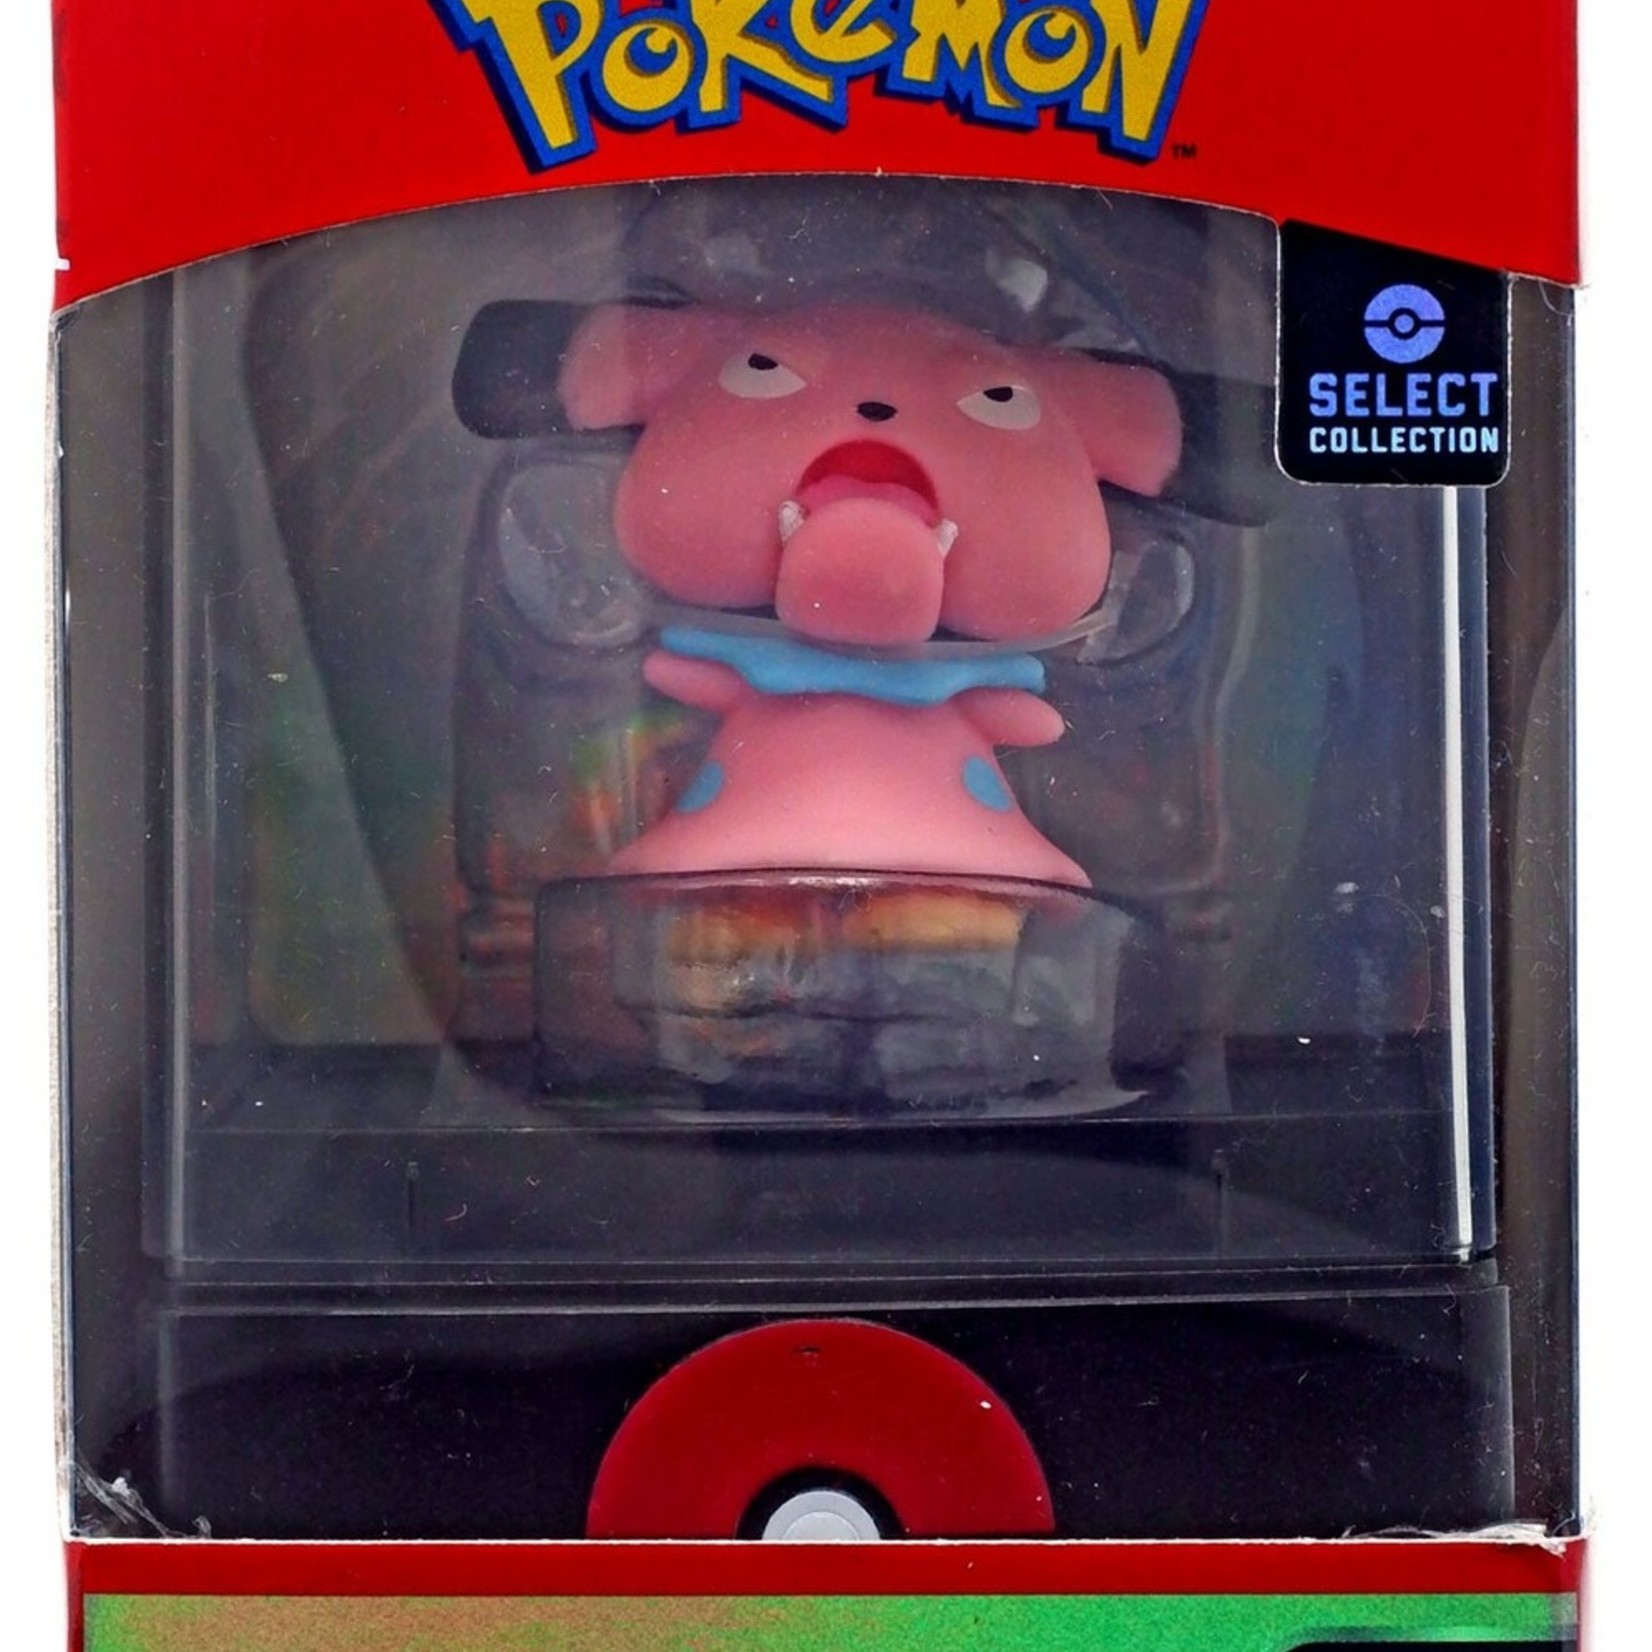 Pokémon Pokémon Select Collection - Snubbull